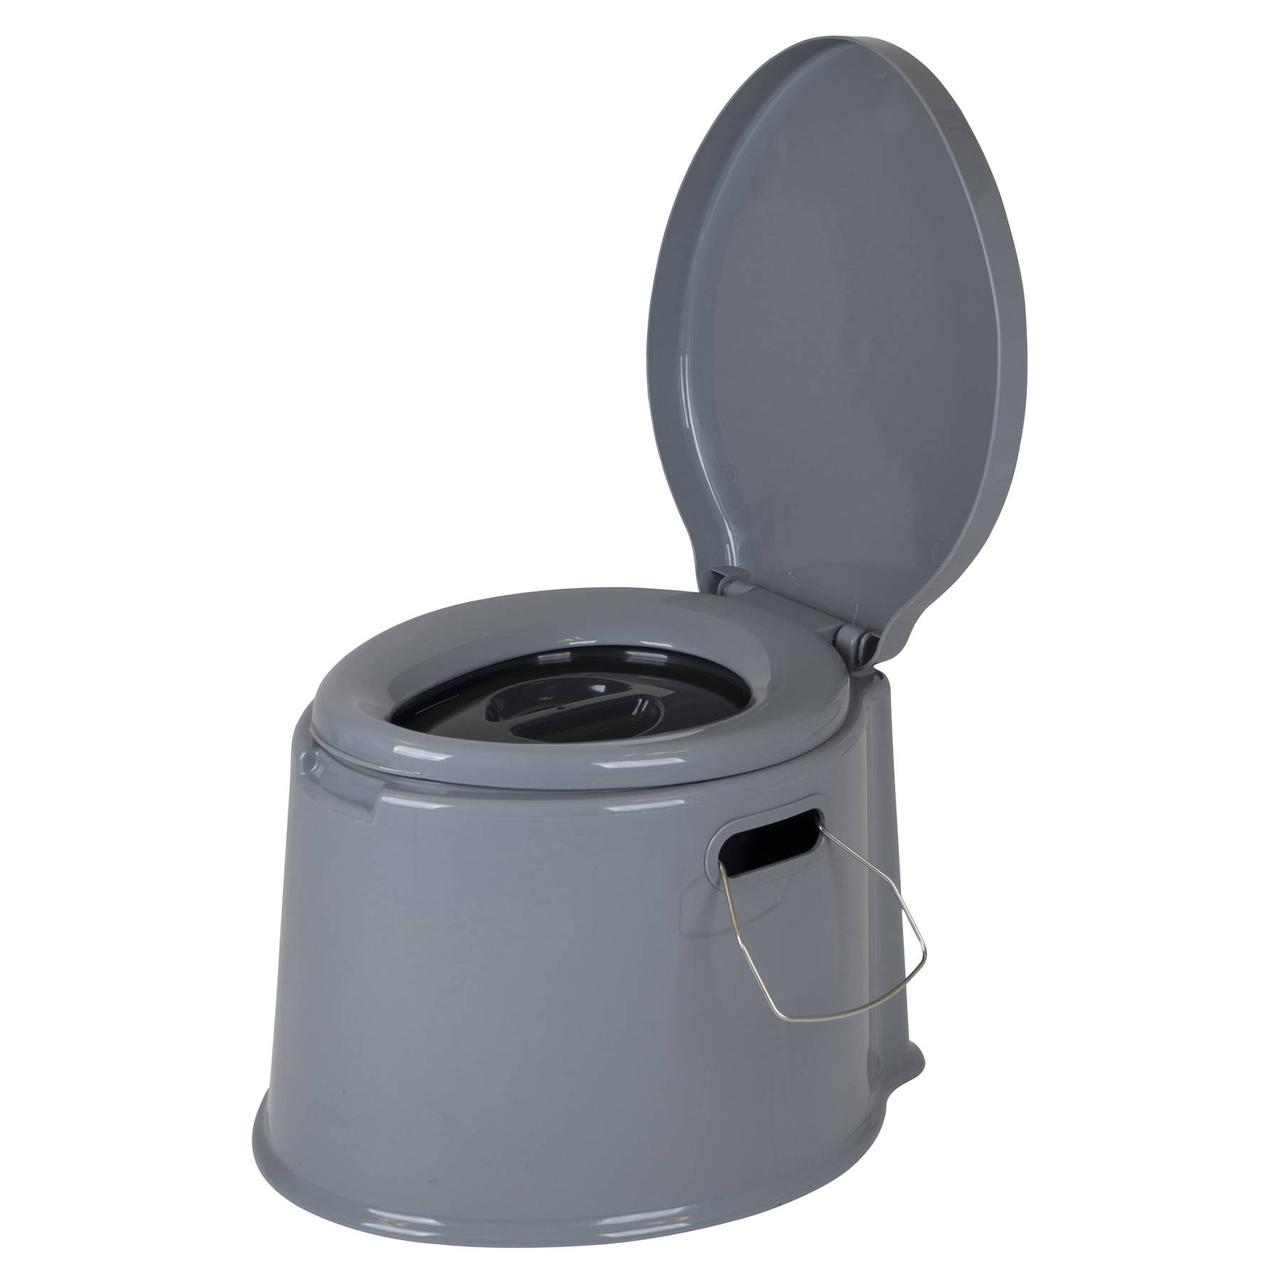 Біотуалет Bo-Camp Portable Toilet 7 Liters Grey (5502800) туалет для дачі, кемпінгу, догляду за хворими, бомбосховищ та укриттів